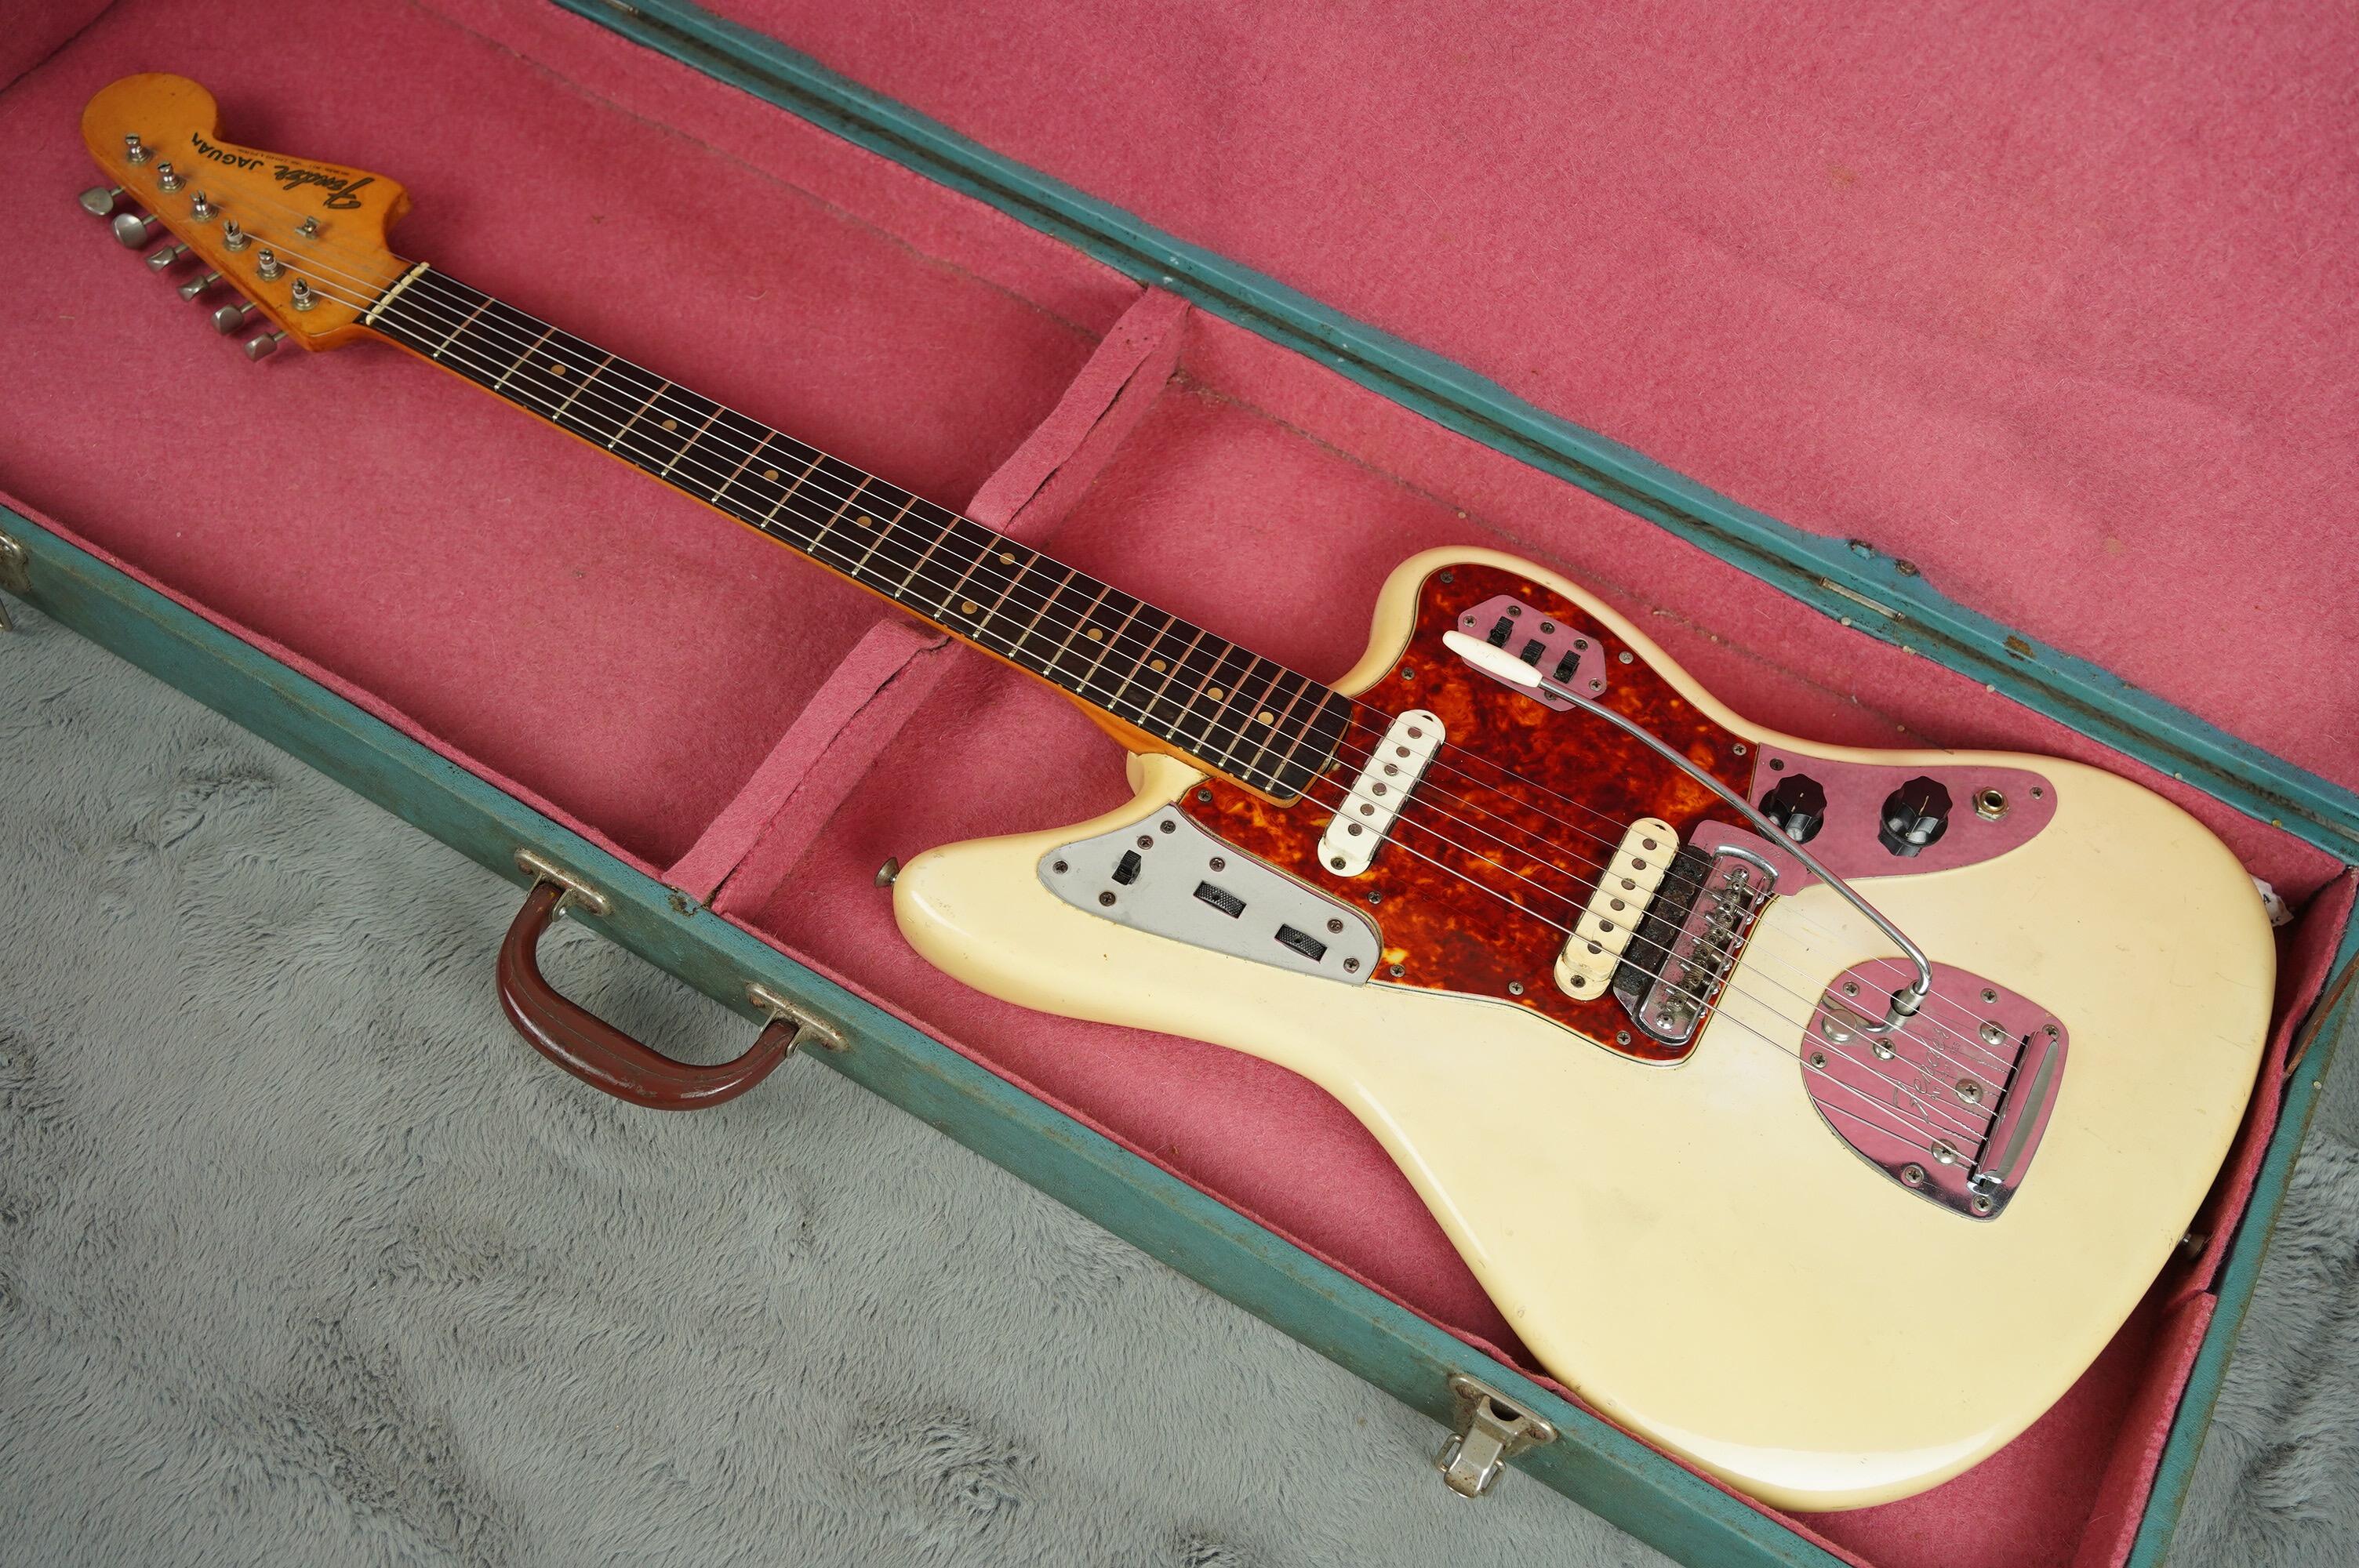 1962 Fender Jaguar refin white